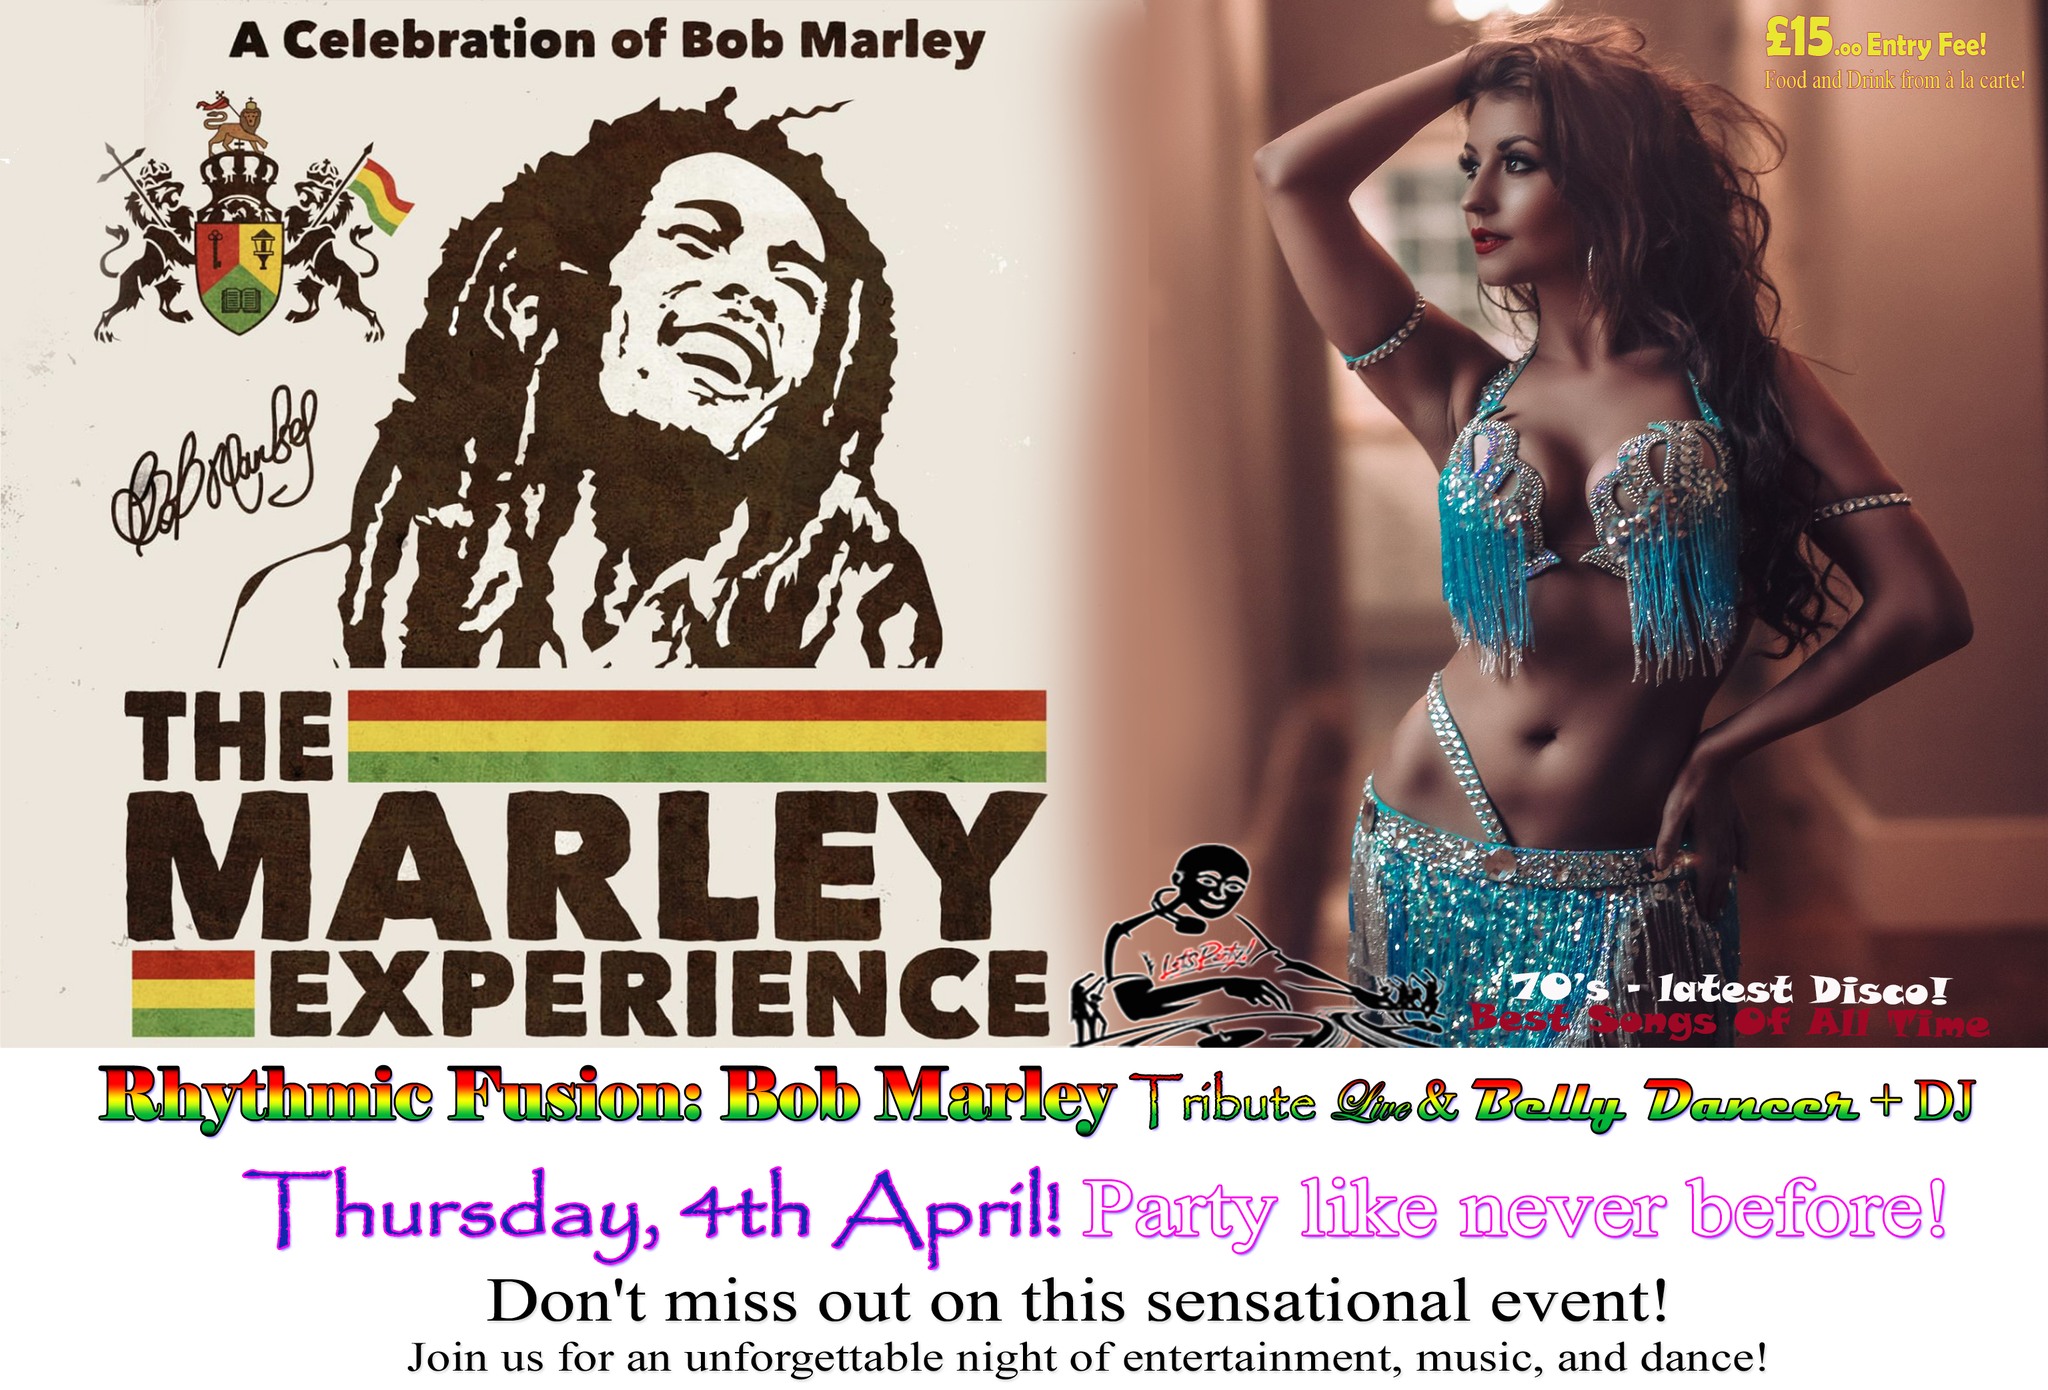 Rhythmic Fusion: Bob Marley Tribute Night 🎶